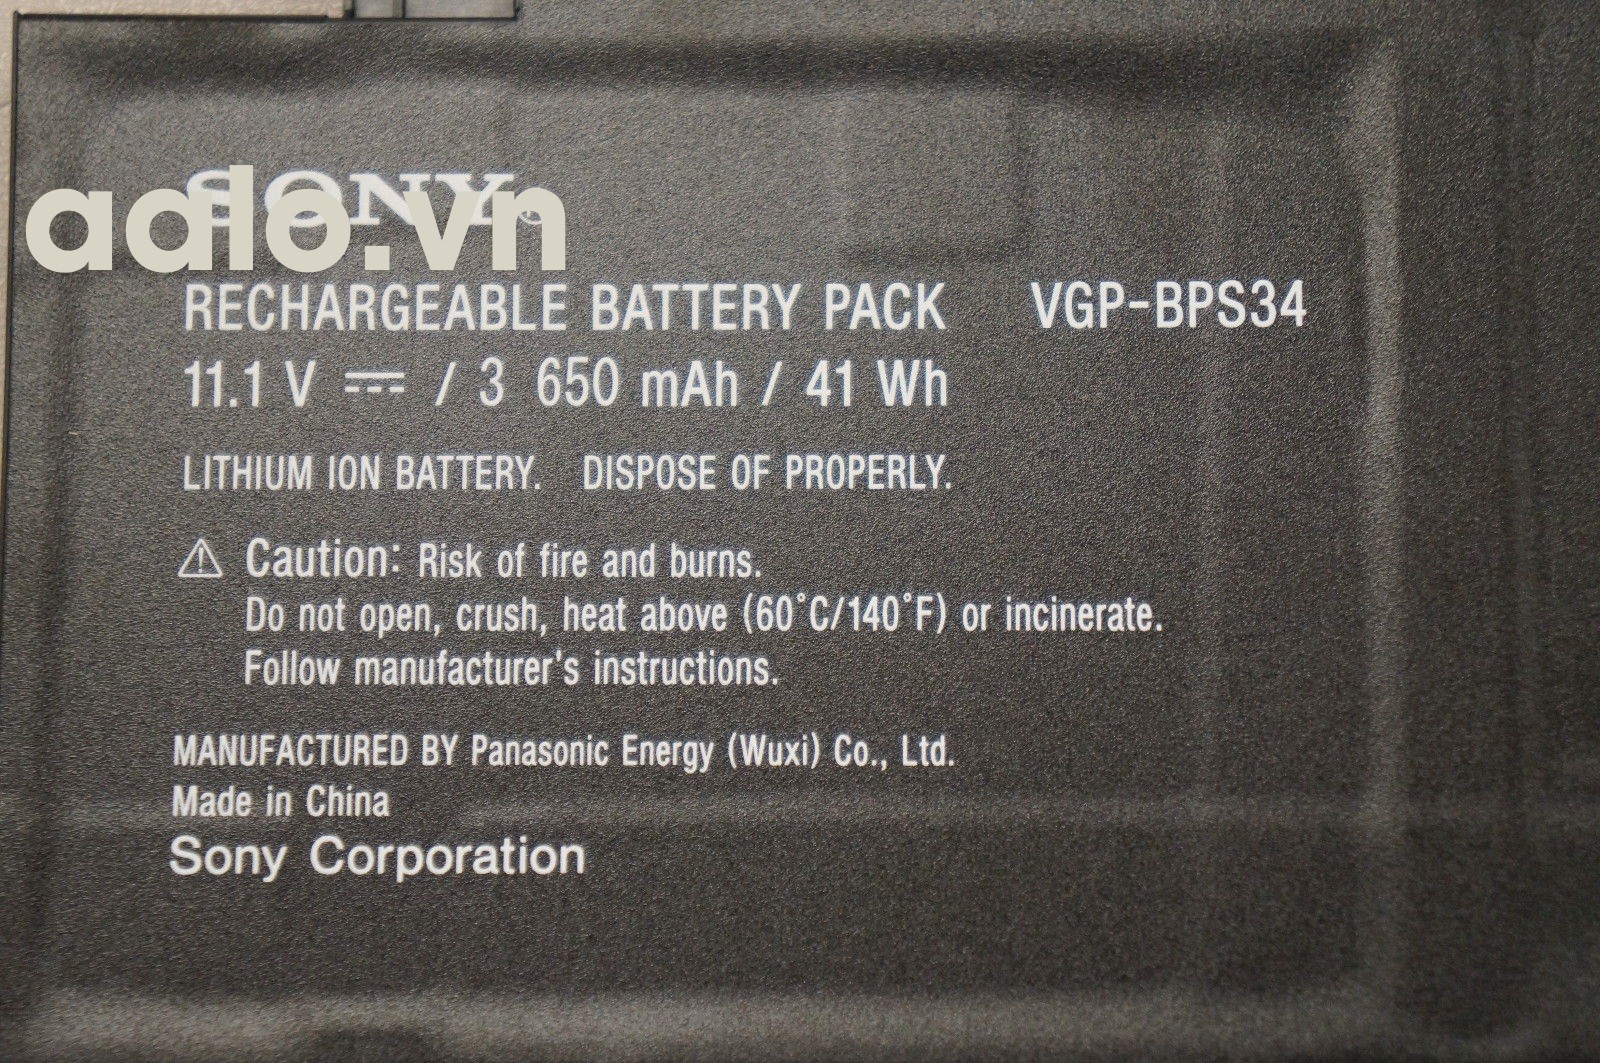 Pin Laptop Sony Vaio VGP-BPS40 - Battery Sony